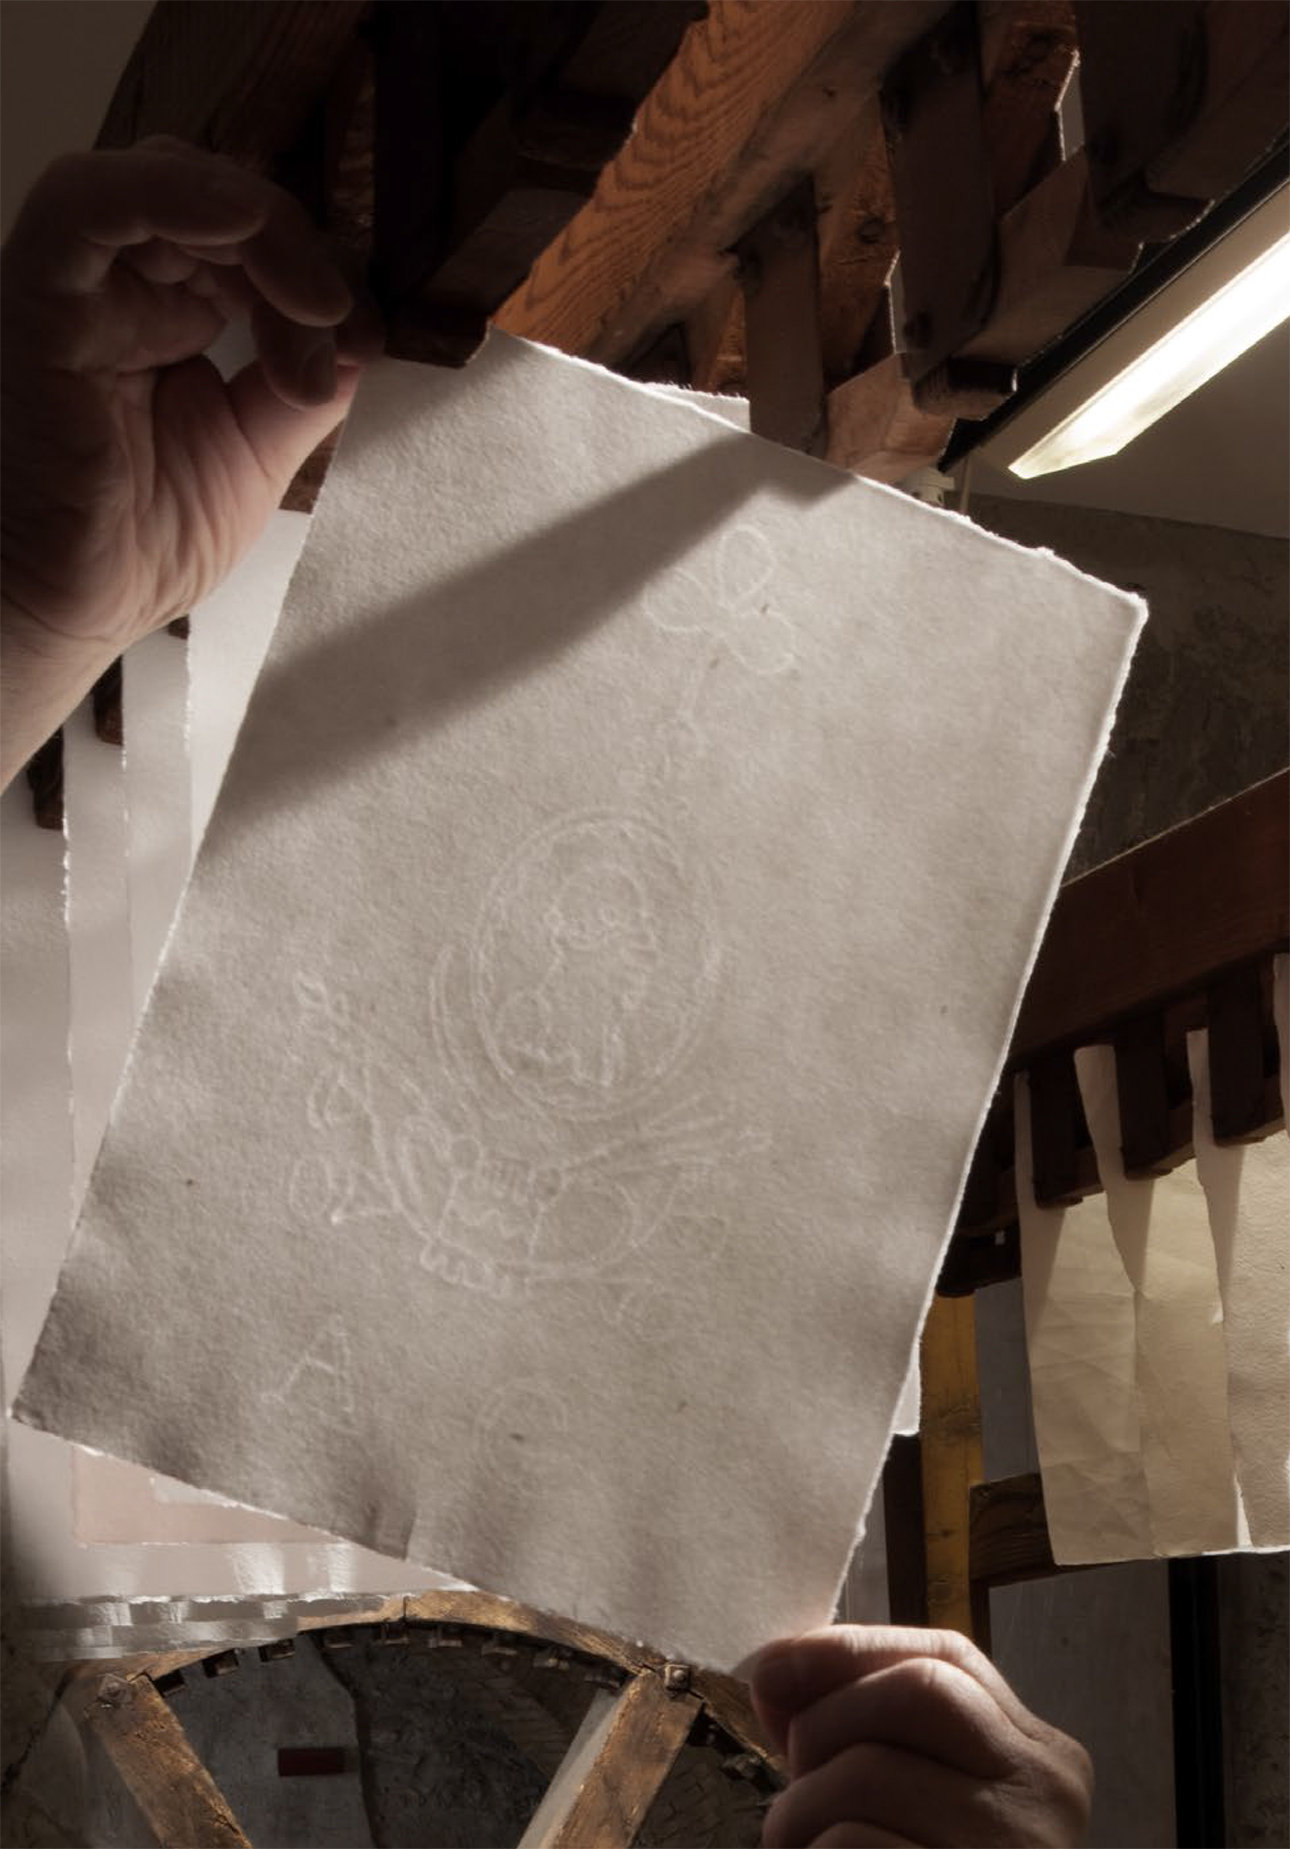 Foglio di carta steso ad asciugare sullo stenditoio, dove si può vedere bene la filigrana Giustacchini. Toscolano maderno, Ecomuseo della Valle delle Cartiere